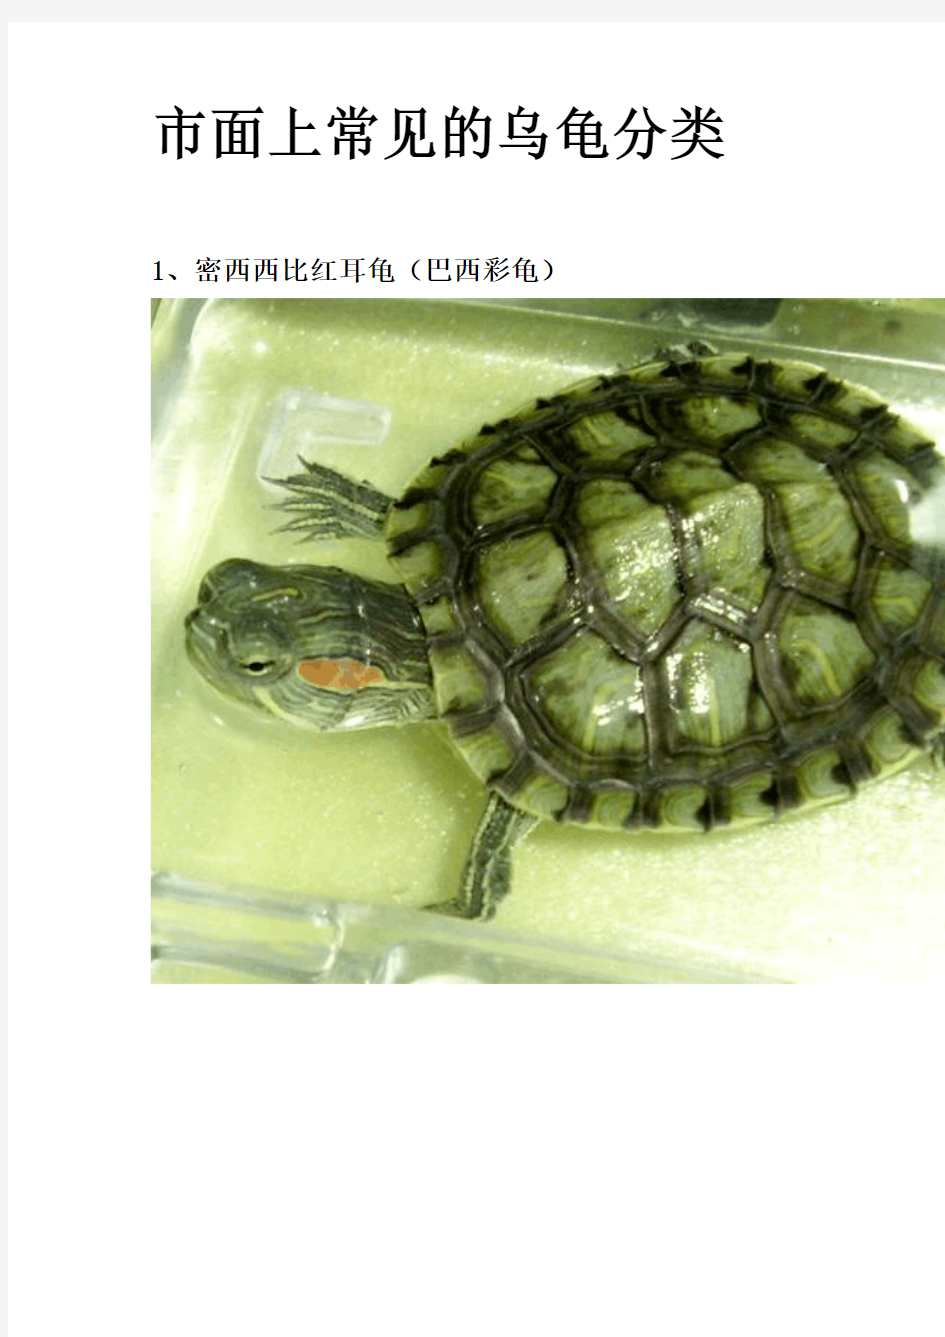 市面上常见的乌龟分类